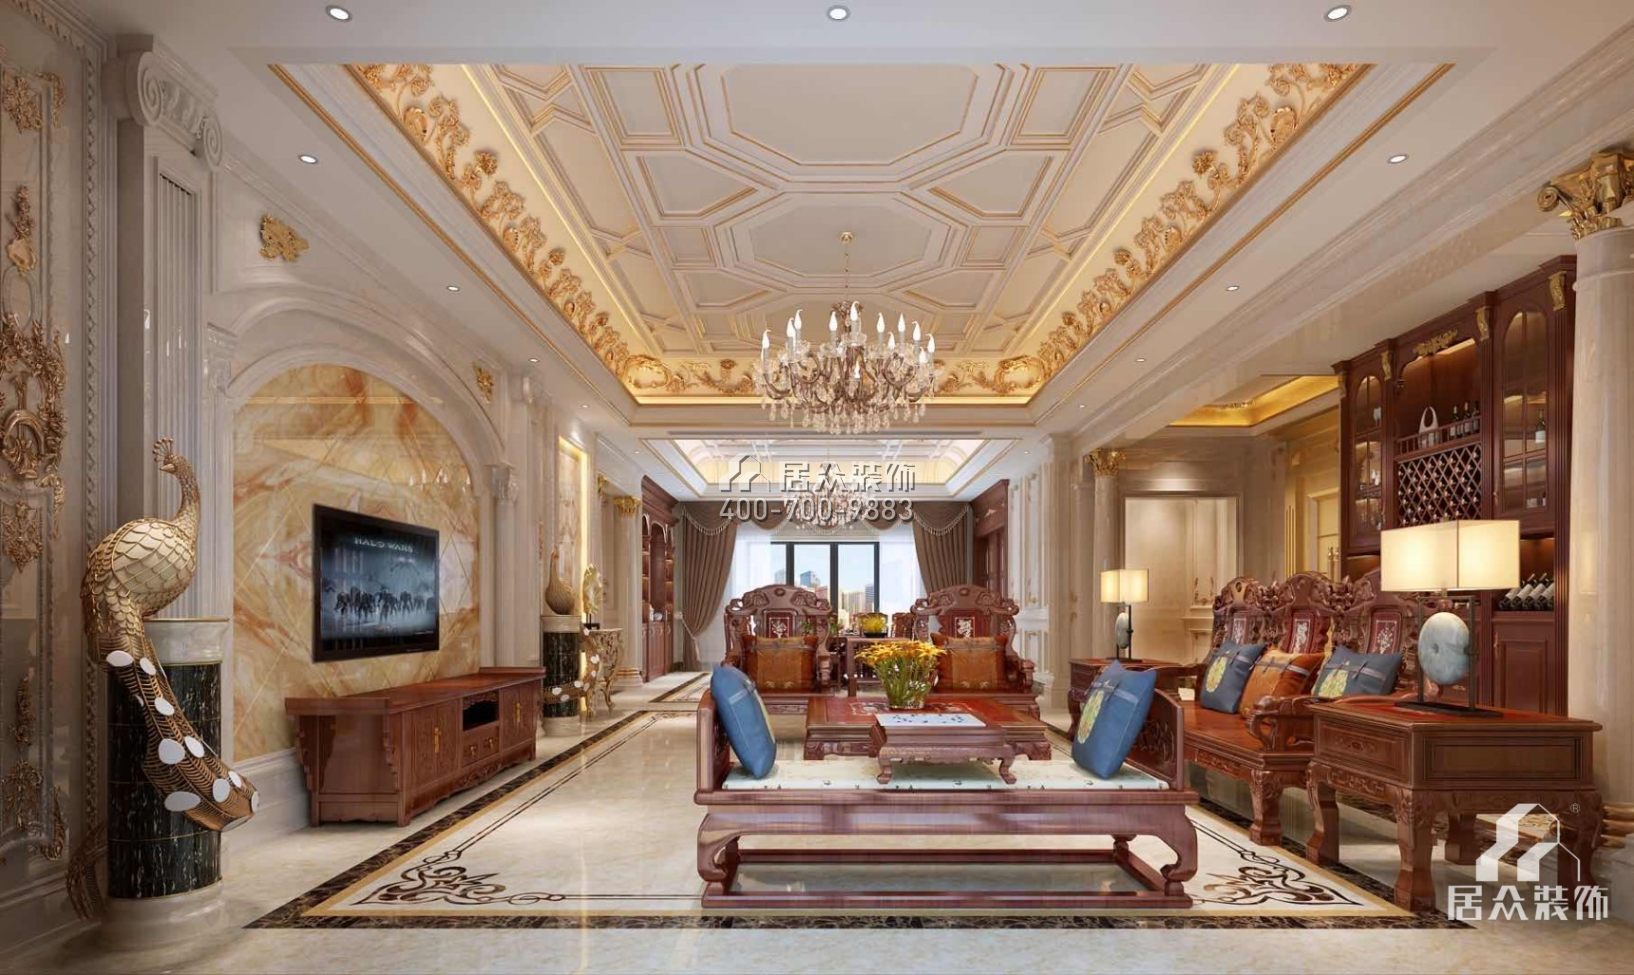 龍泉豪苑560平方米混搭風格平層戶型客廳裝修效果圖